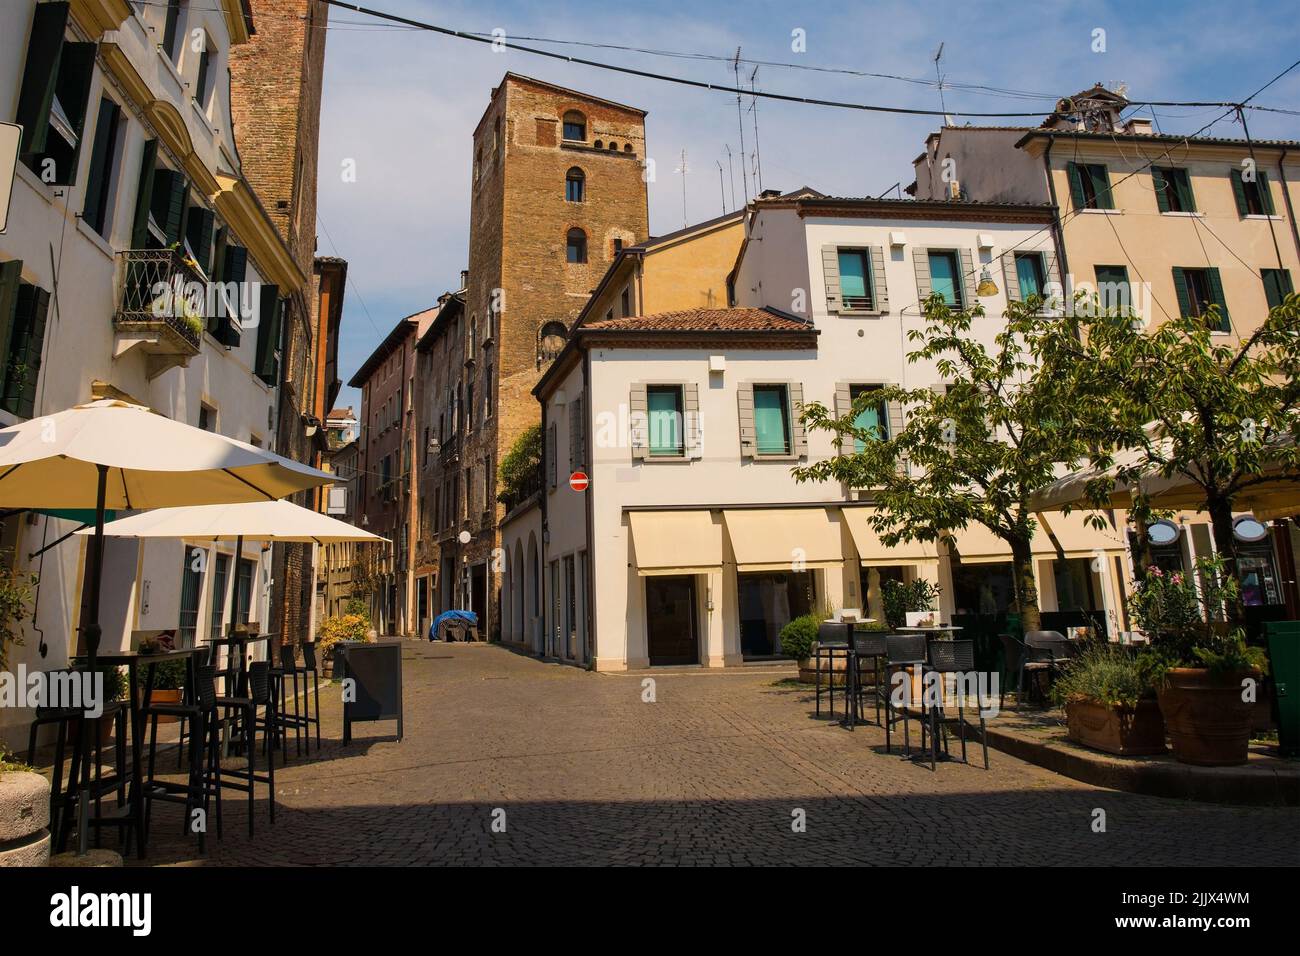 Der historische Piazza Pola im historischen Zentrum von Treviso, Venetien, Italien. Blick Richtung Via Paris Bordone Stockfoto